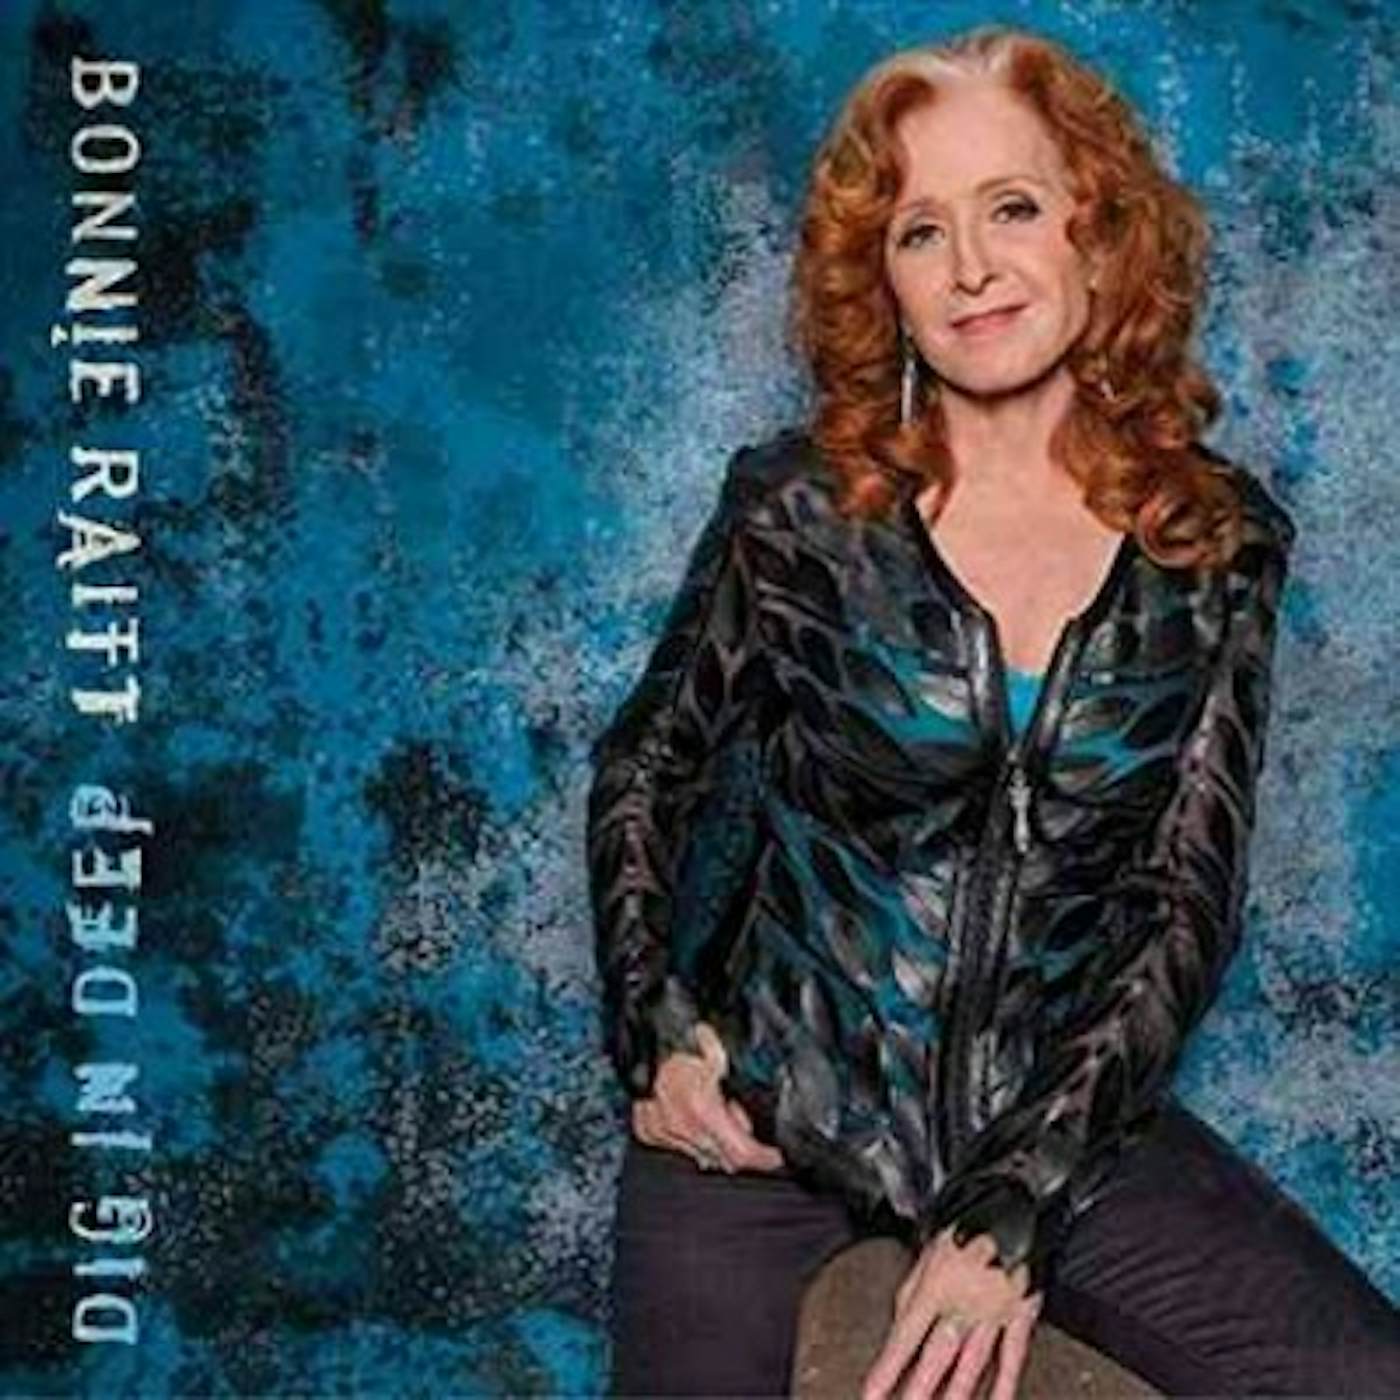 Bonnie Raitt DIG IN DEEP CD